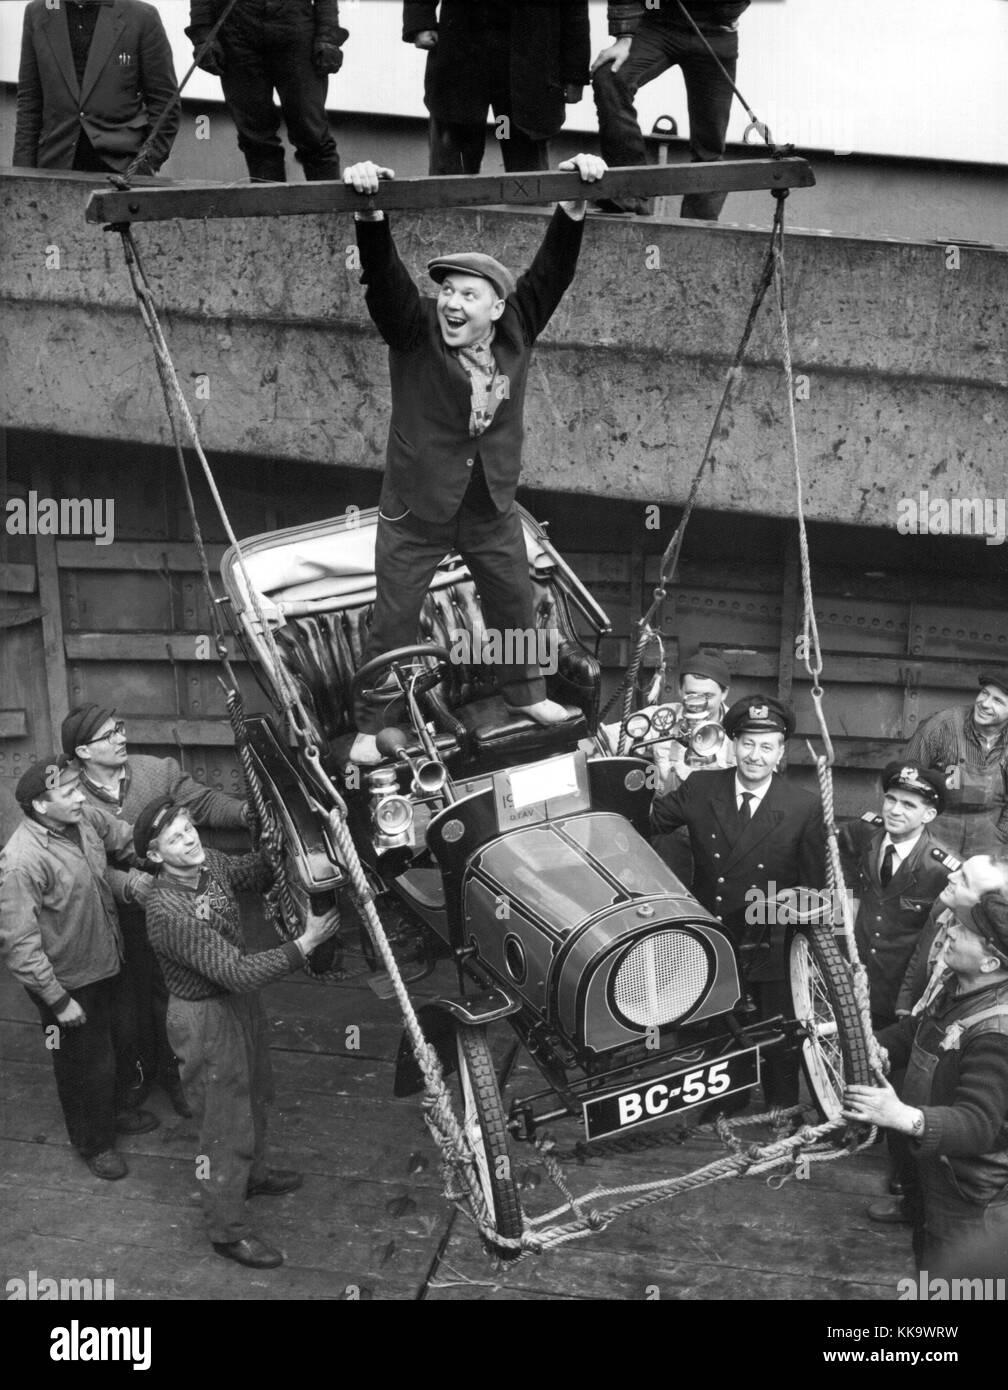 Der Clown der Staatlichen Moskauer Zirkus oleg Popow erhält sein neues Auto, ein Oldtimer Ferrari von 1906, bei seiner Ankunft in Hamburg, dargestellt am 17. Februar 1961. | Verwendung weltweit Stockfoto